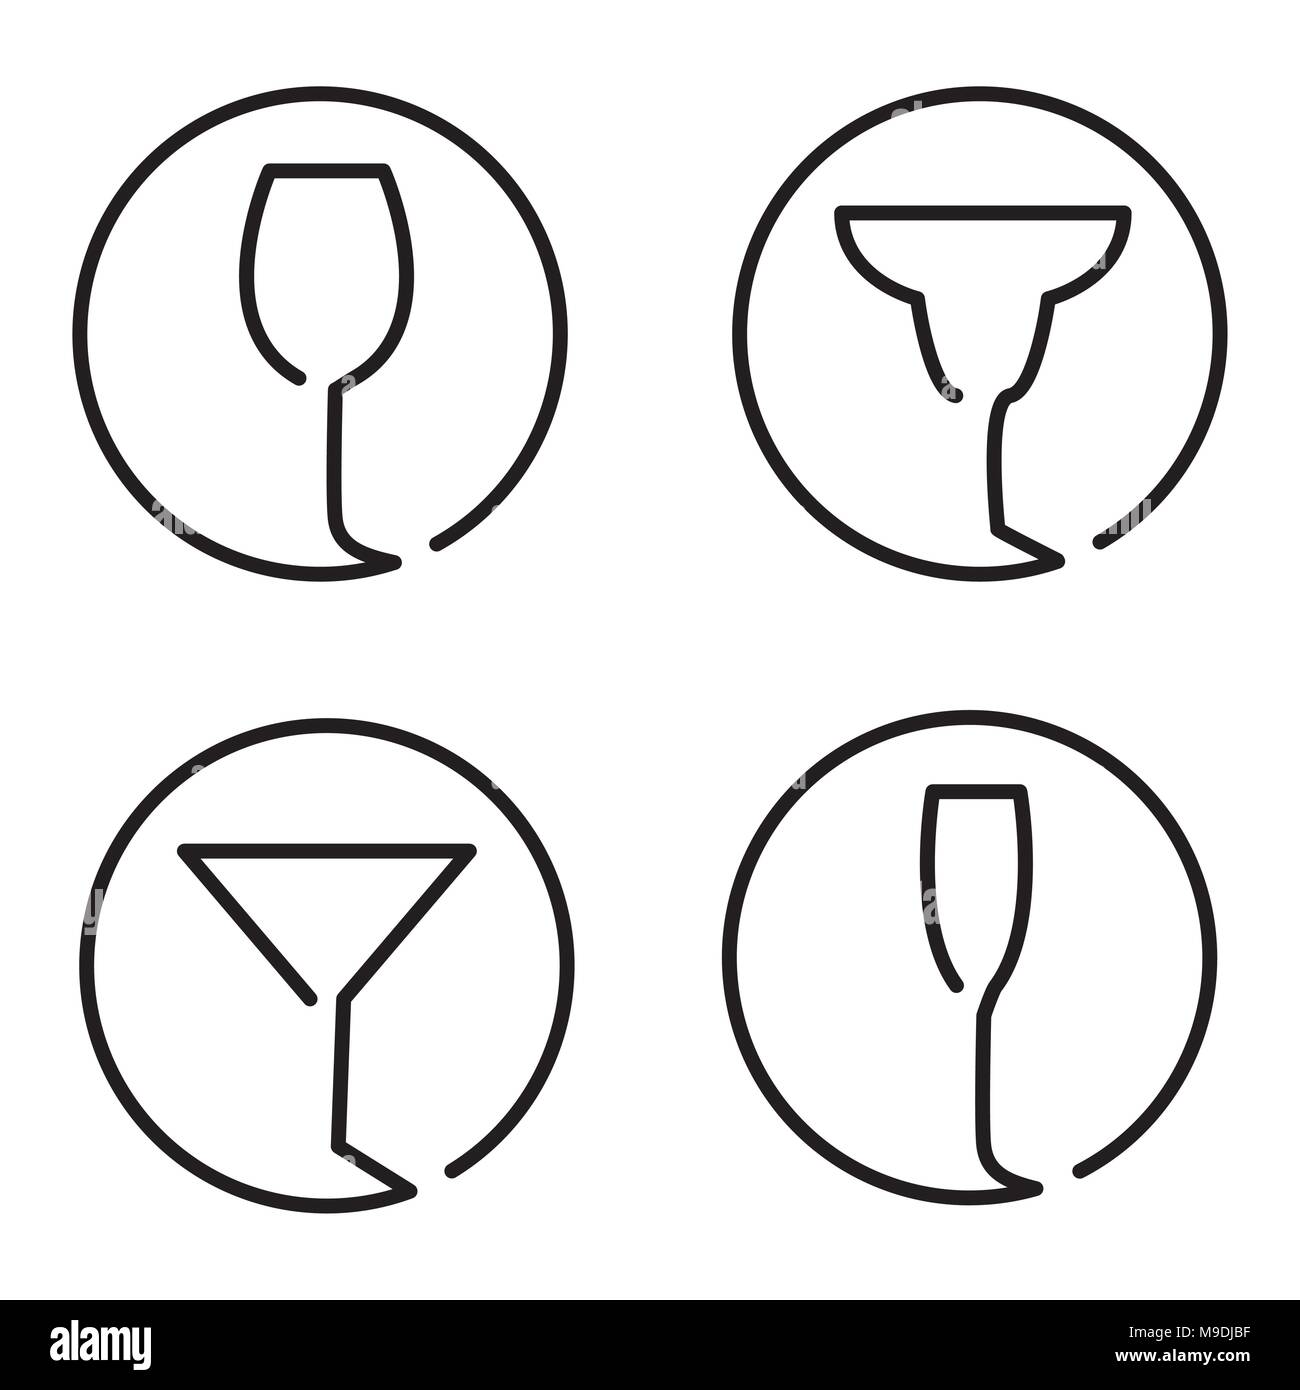 Ligne continue logo ensemble de verres différents, vin, cocktail margarita, Martini, Champaign Illustration de Vecteur